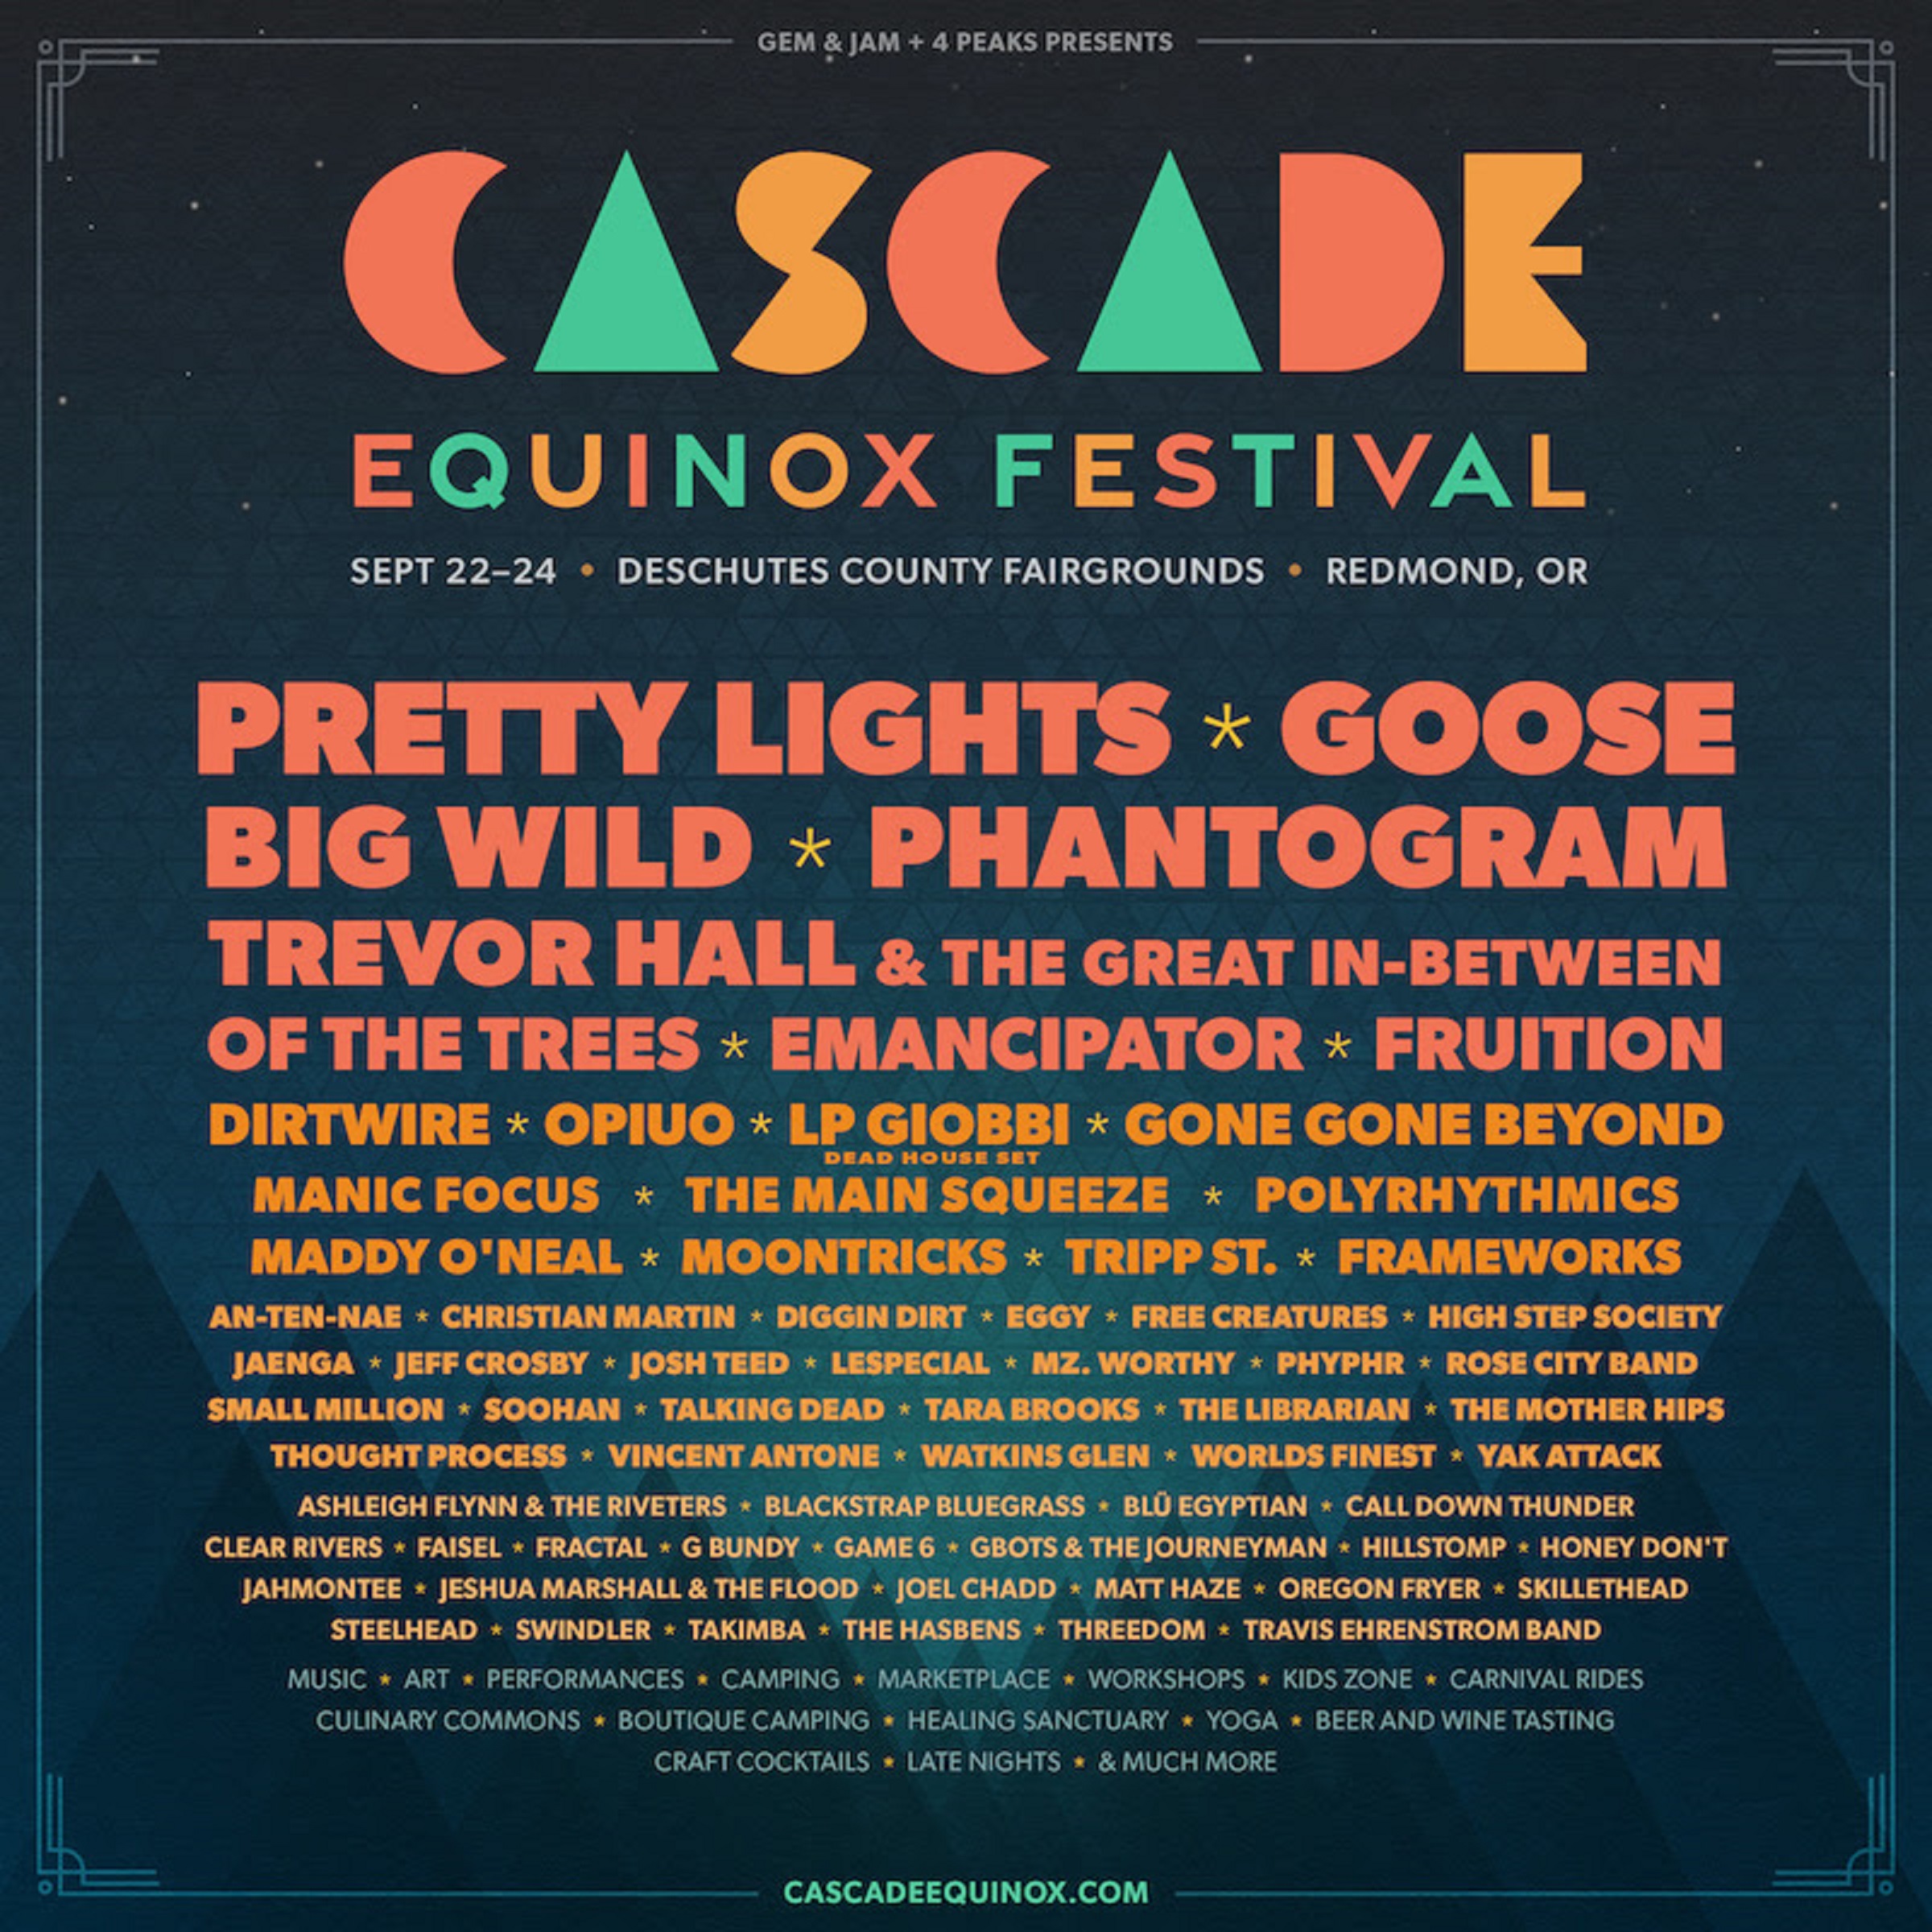 Pretty Lights, Goose, Big Wild, & Phantogram to headline new cross-genre camping festival Cascade Equinox